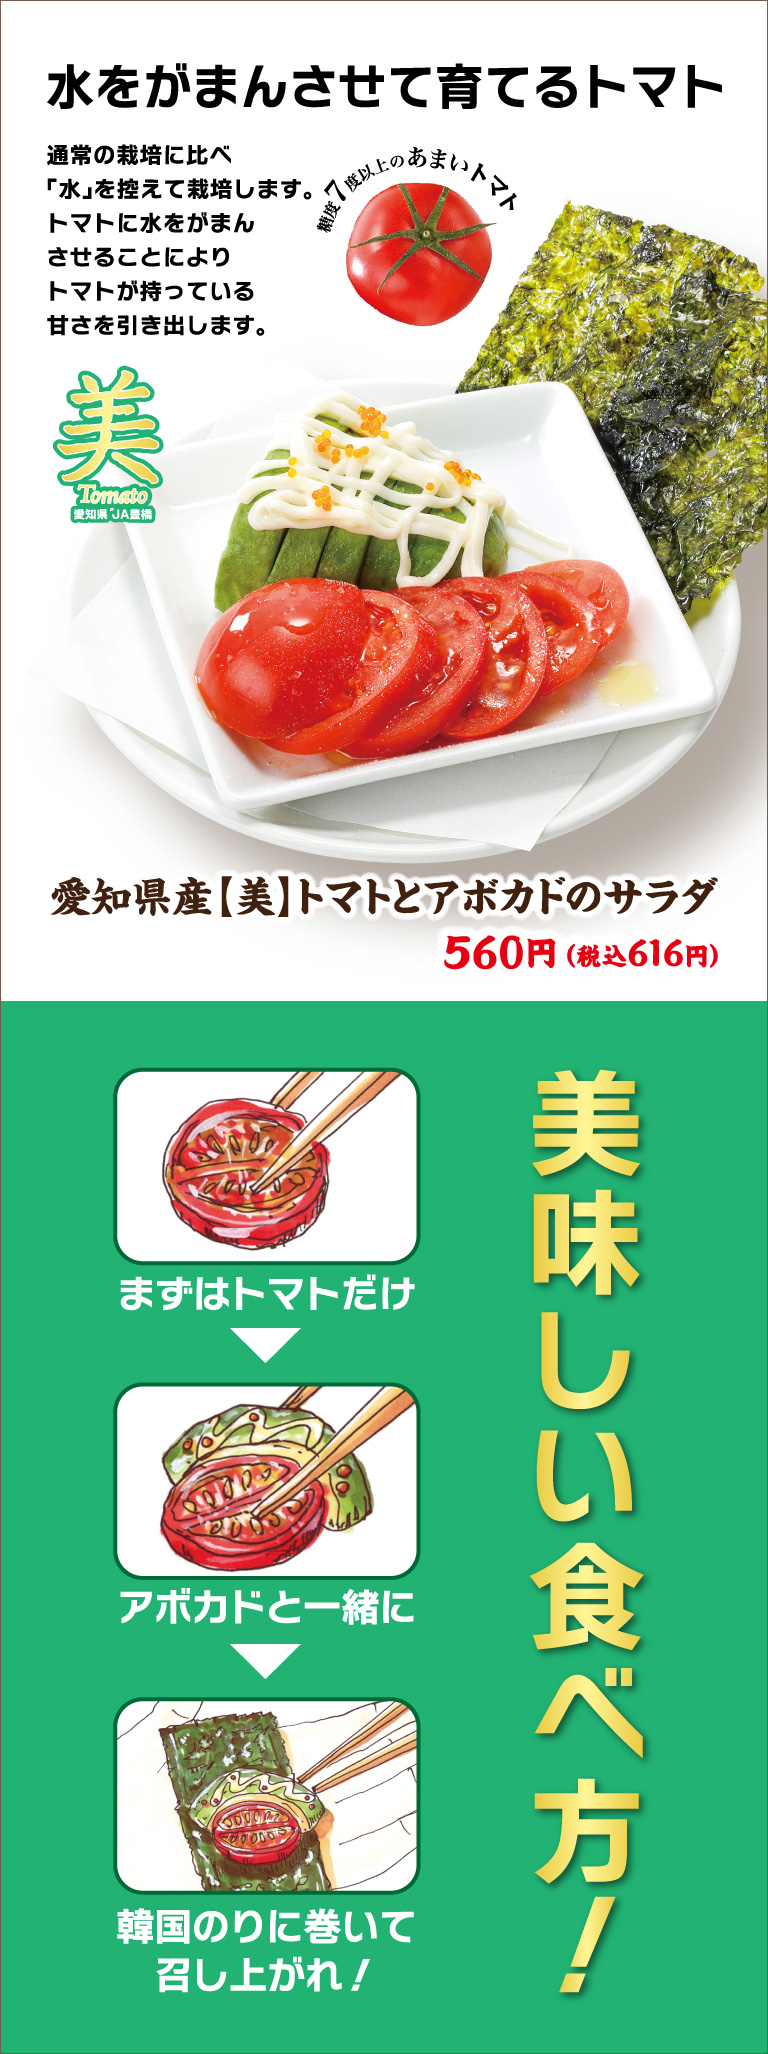 Aichi Prefecture [Beauty] Tomato and Avocado Salad